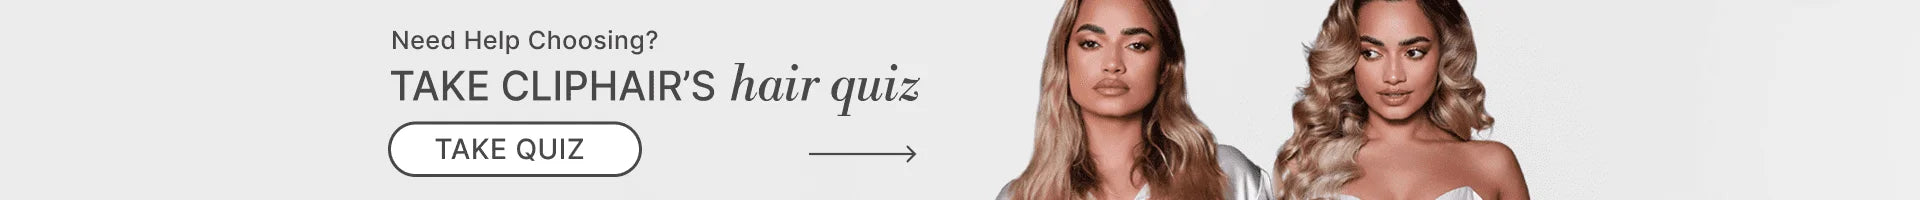 take cliphair's hair quiz